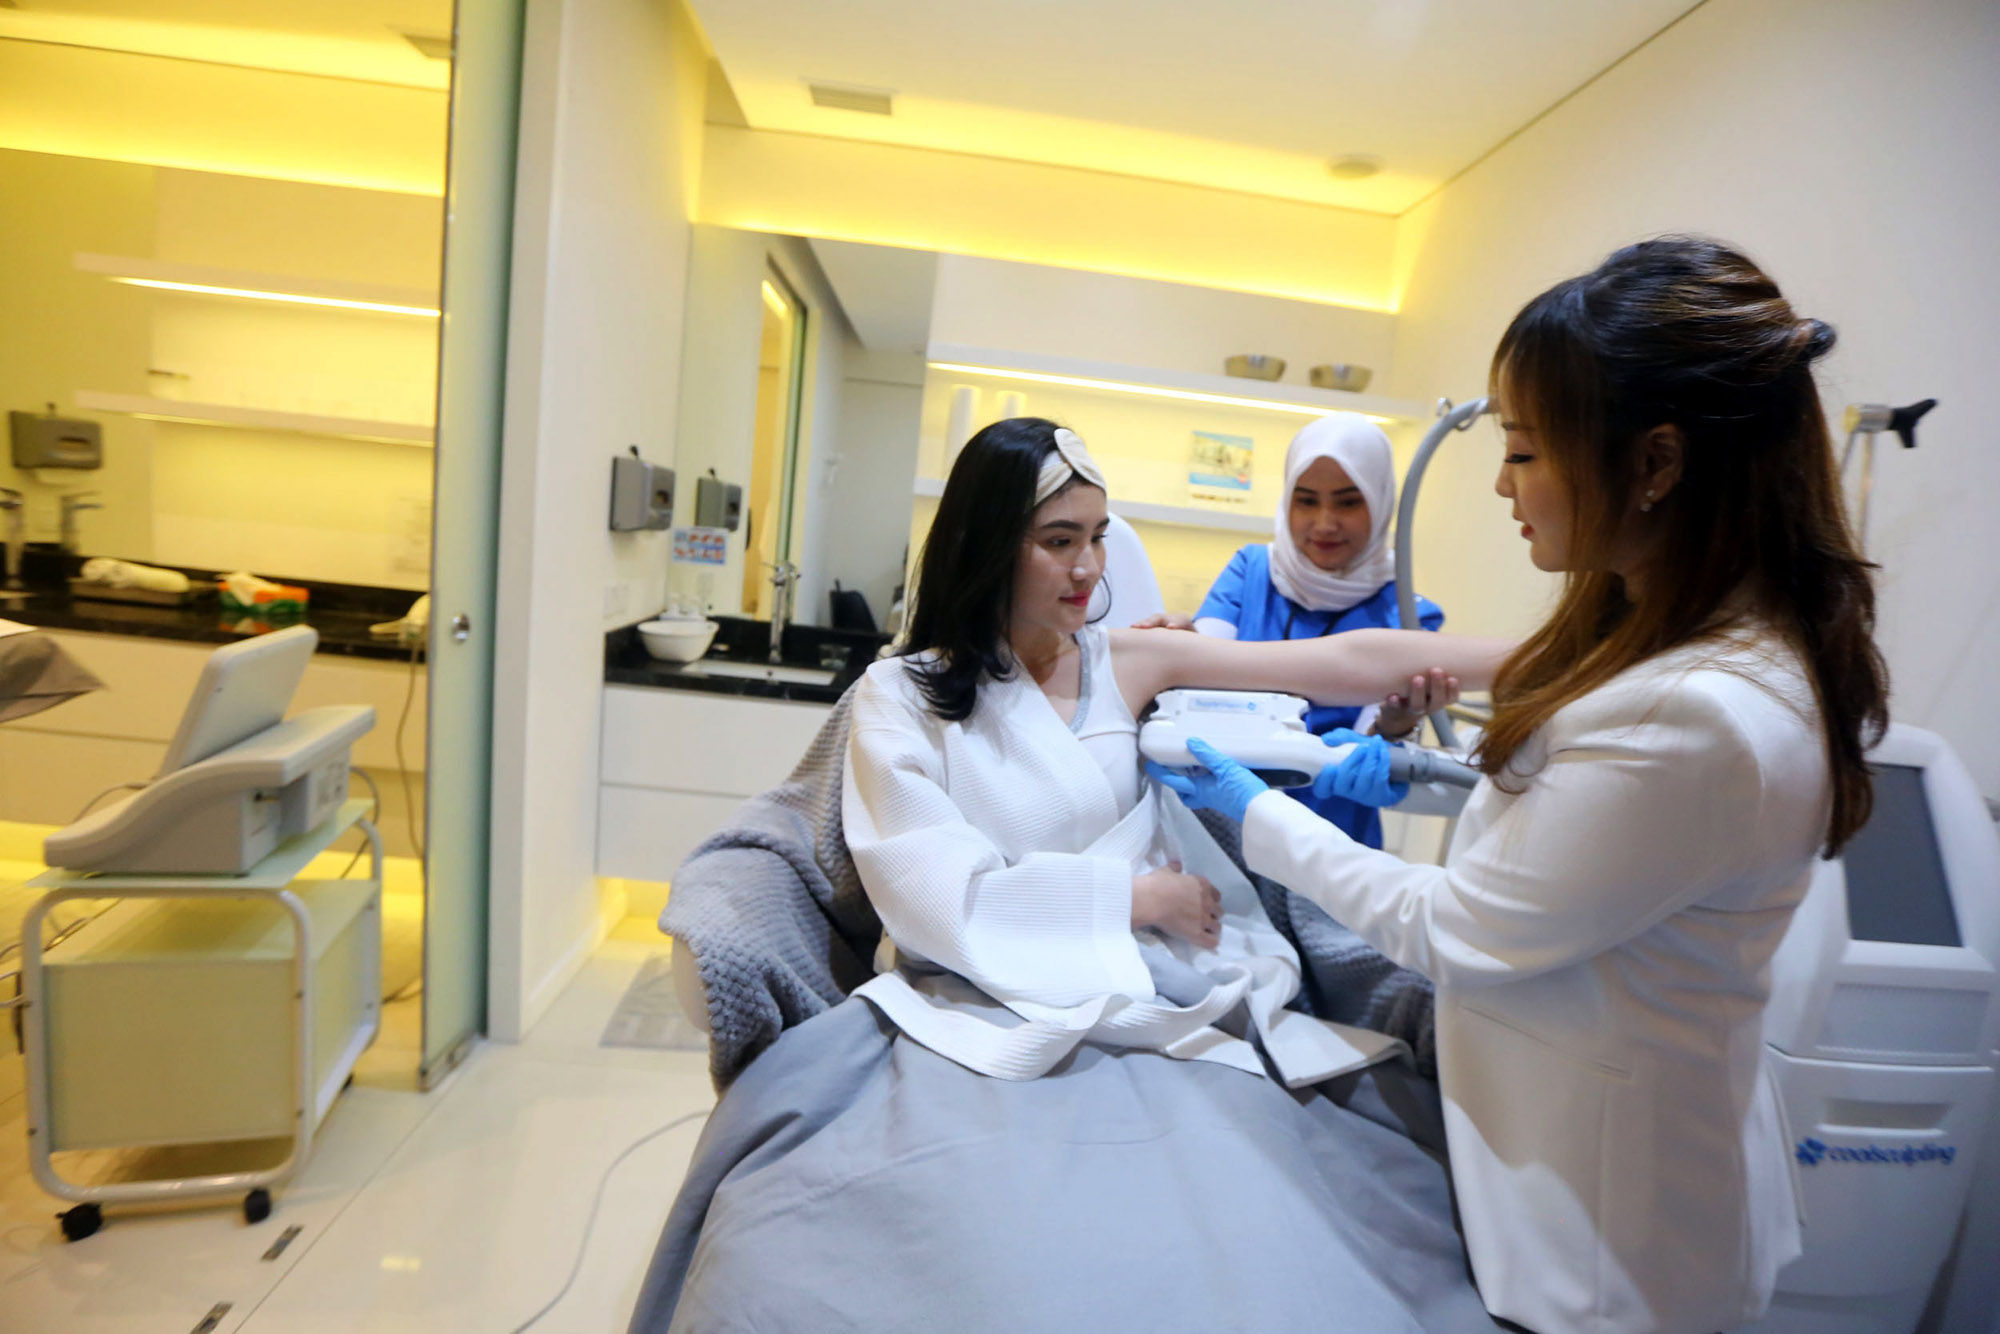 <p>Pasien melakukan perawatan wajah di salah satu klinik kecantikan, di Jakarta. Foto: Ismail Pohan/TrenAsia</p>
